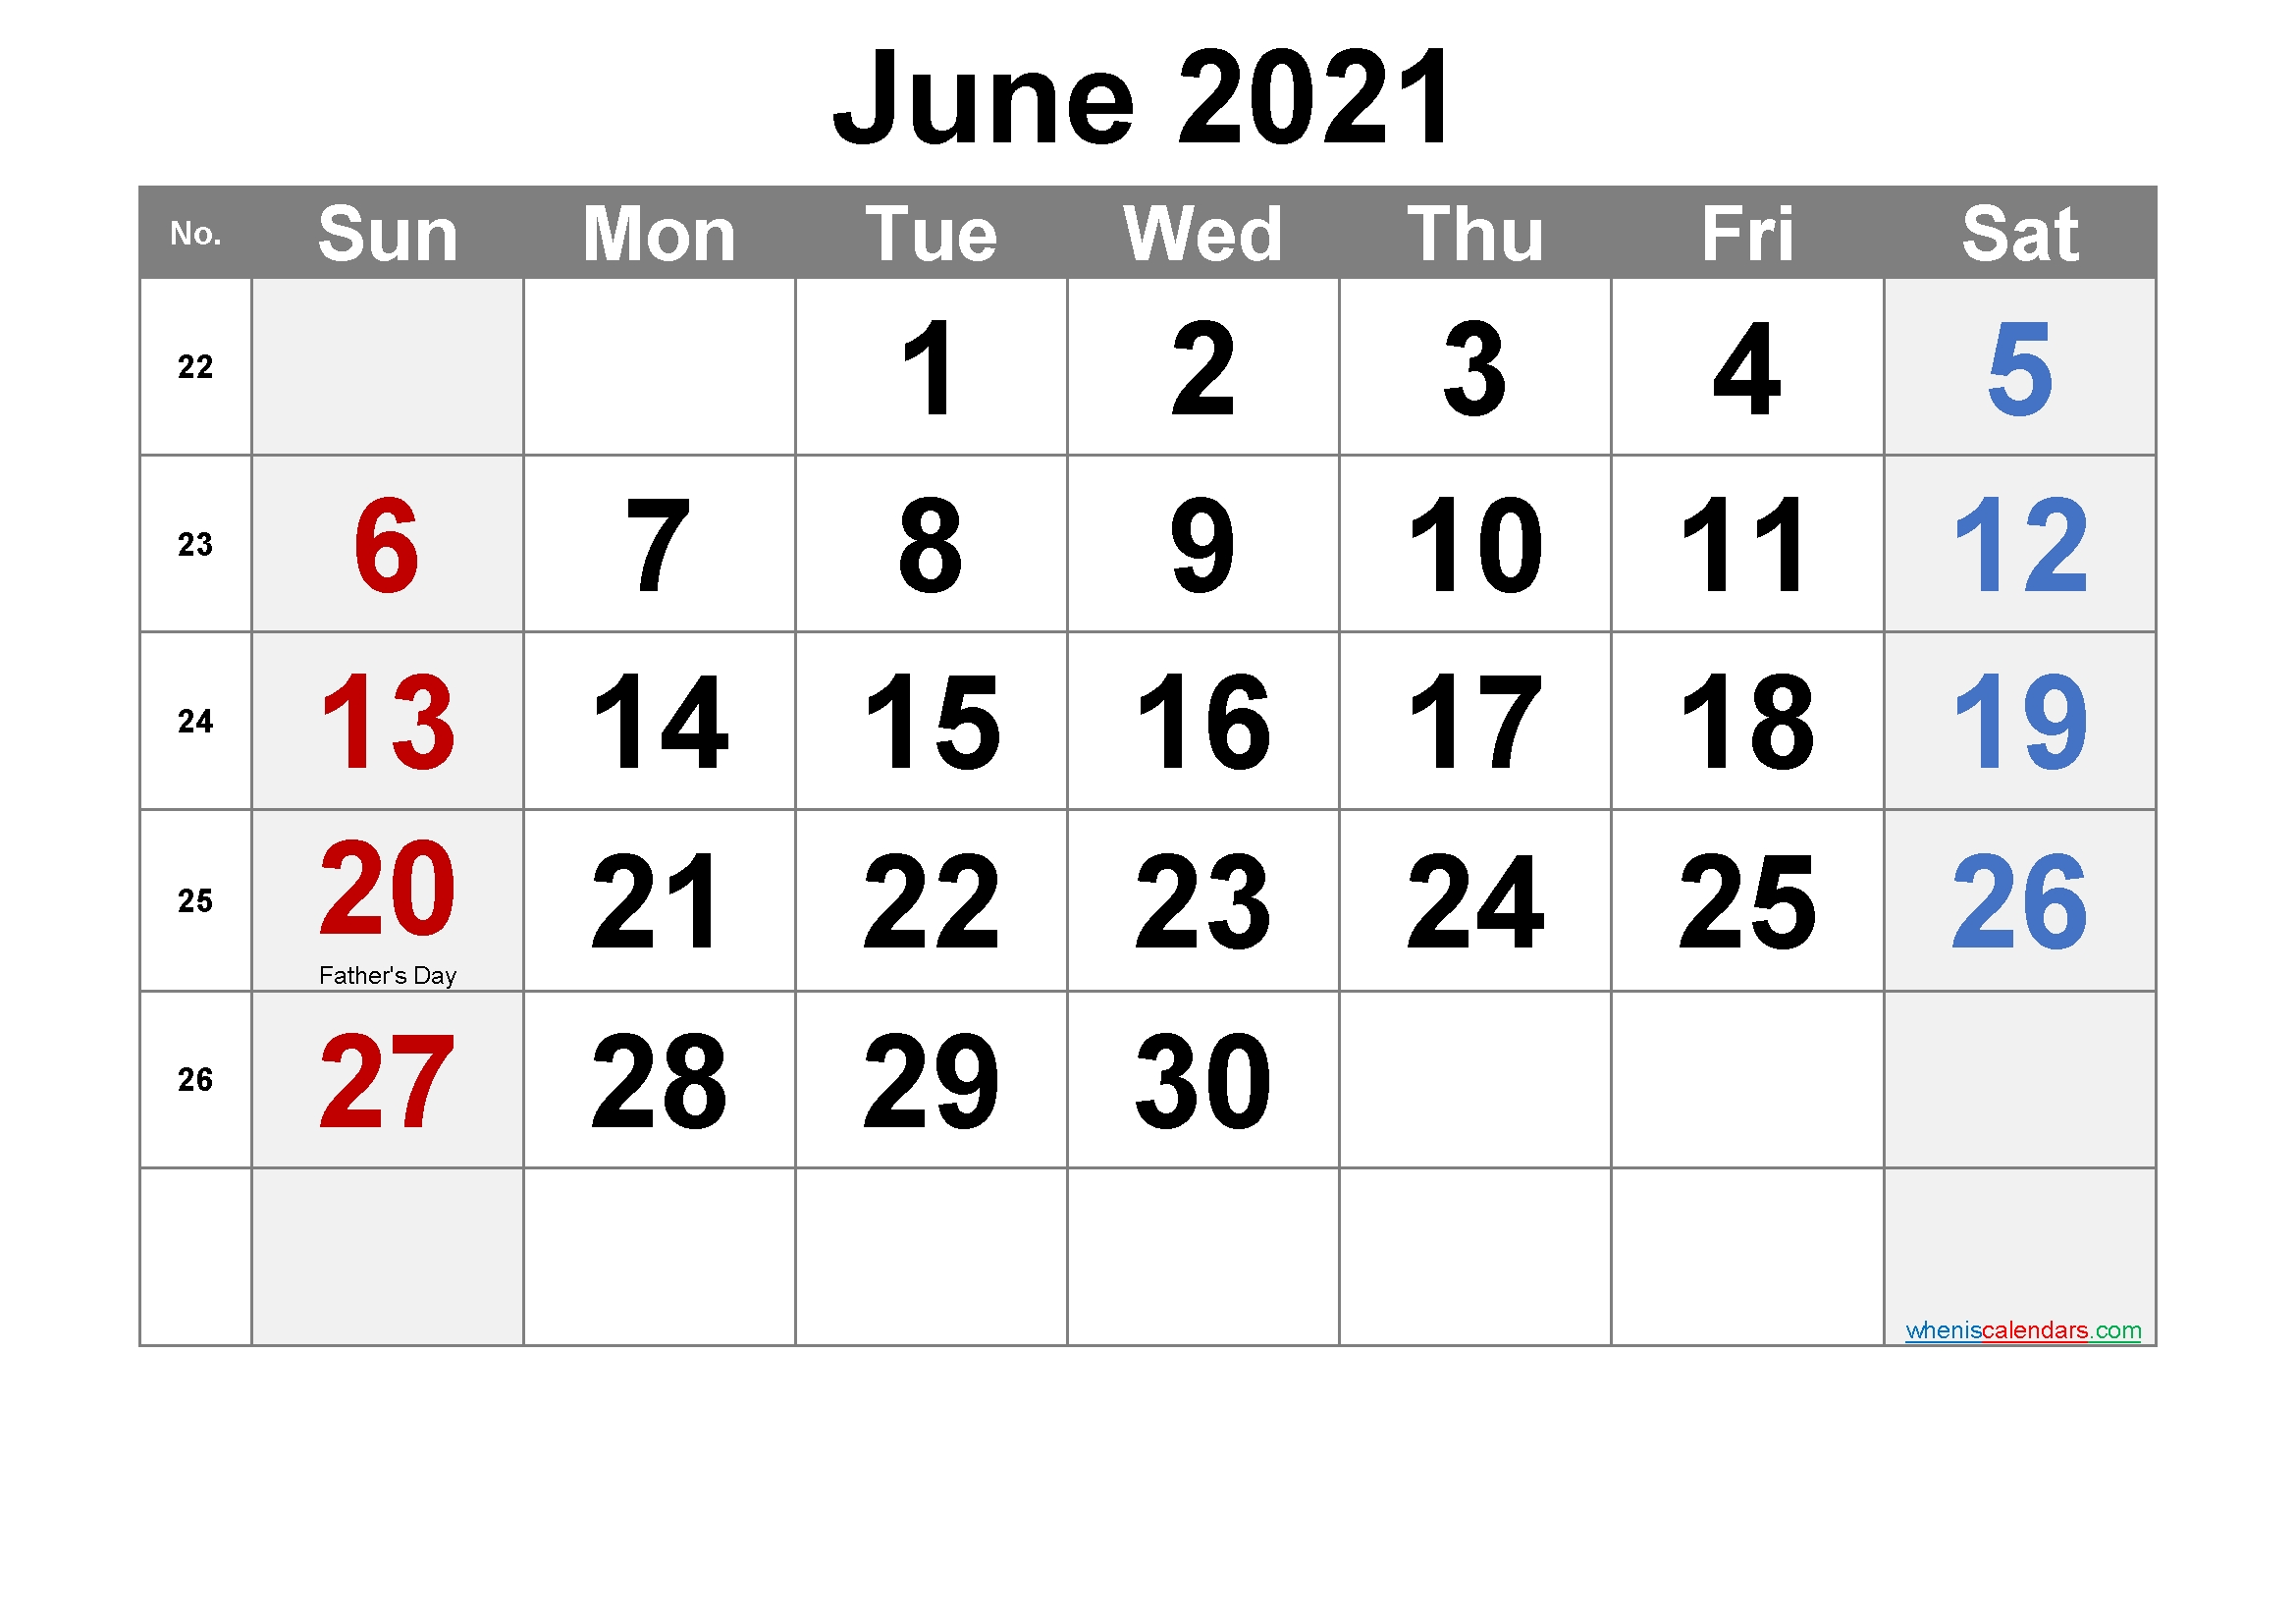 20+ June 2021 Calendar - Free Download Printable Calendar Templates ️ June 2021 Calendar Template Excel